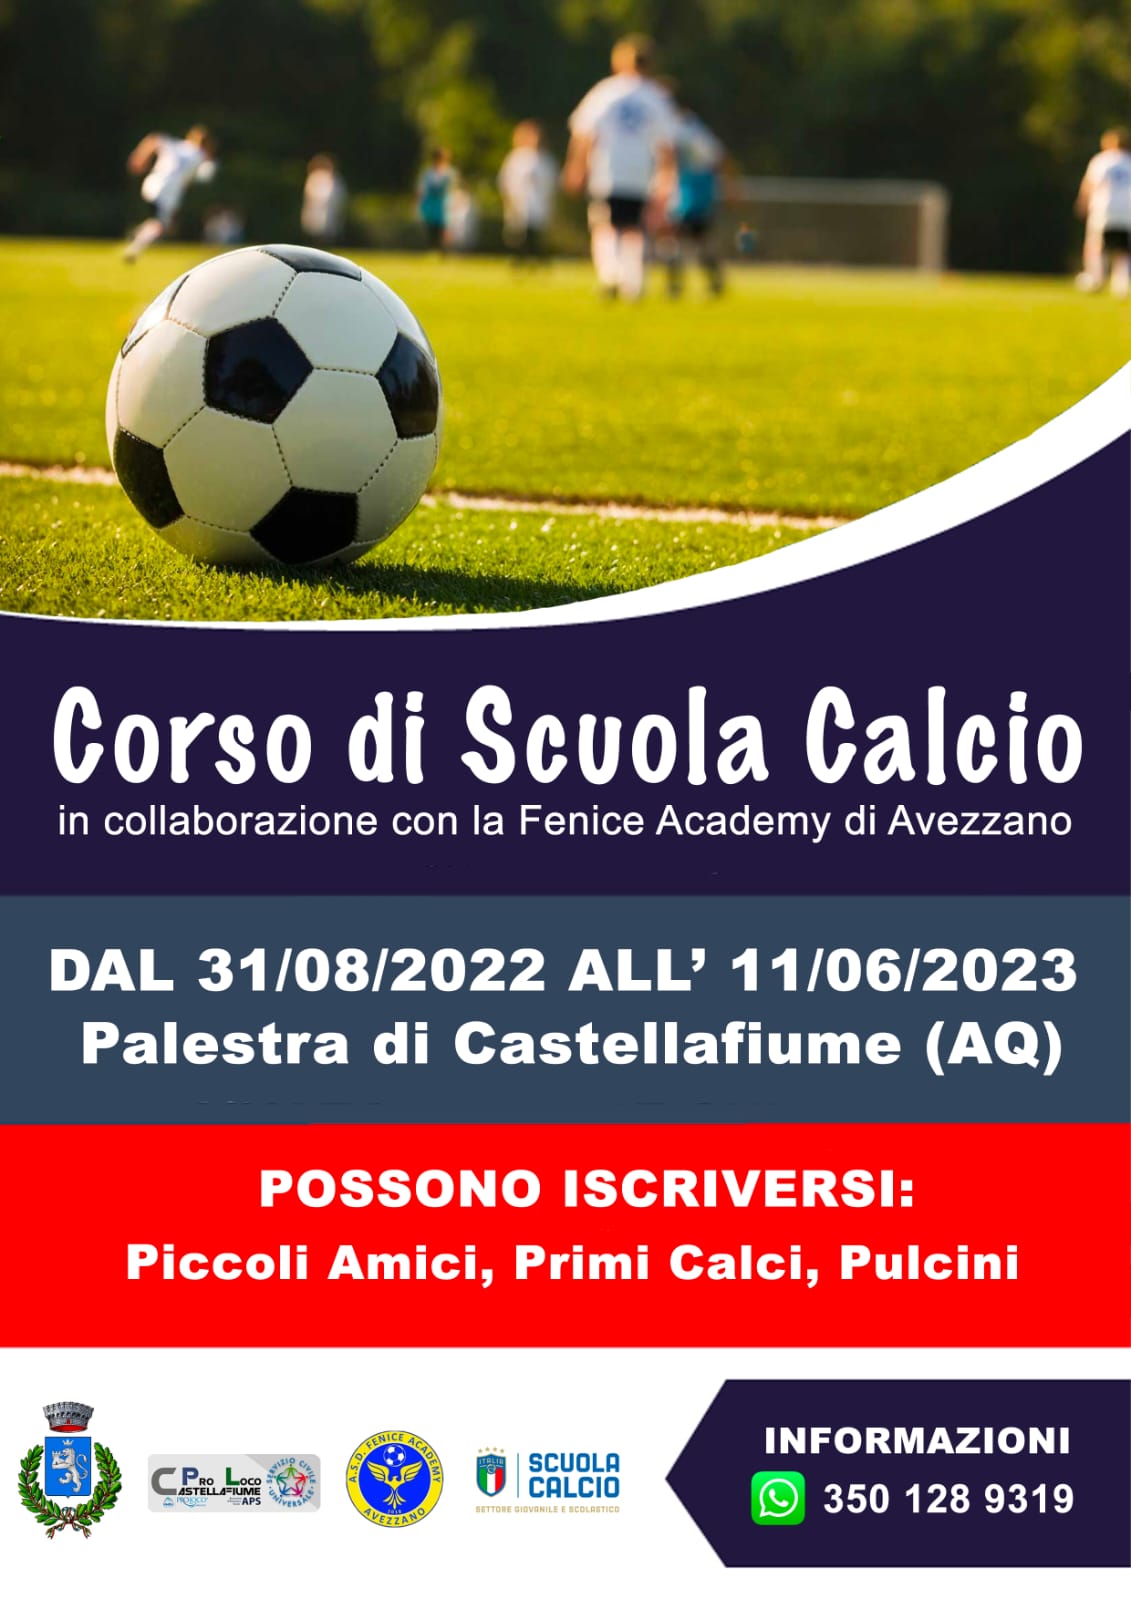 Corso di Scuola Calcio 2022/2023 - Pro Loco Castellafiume